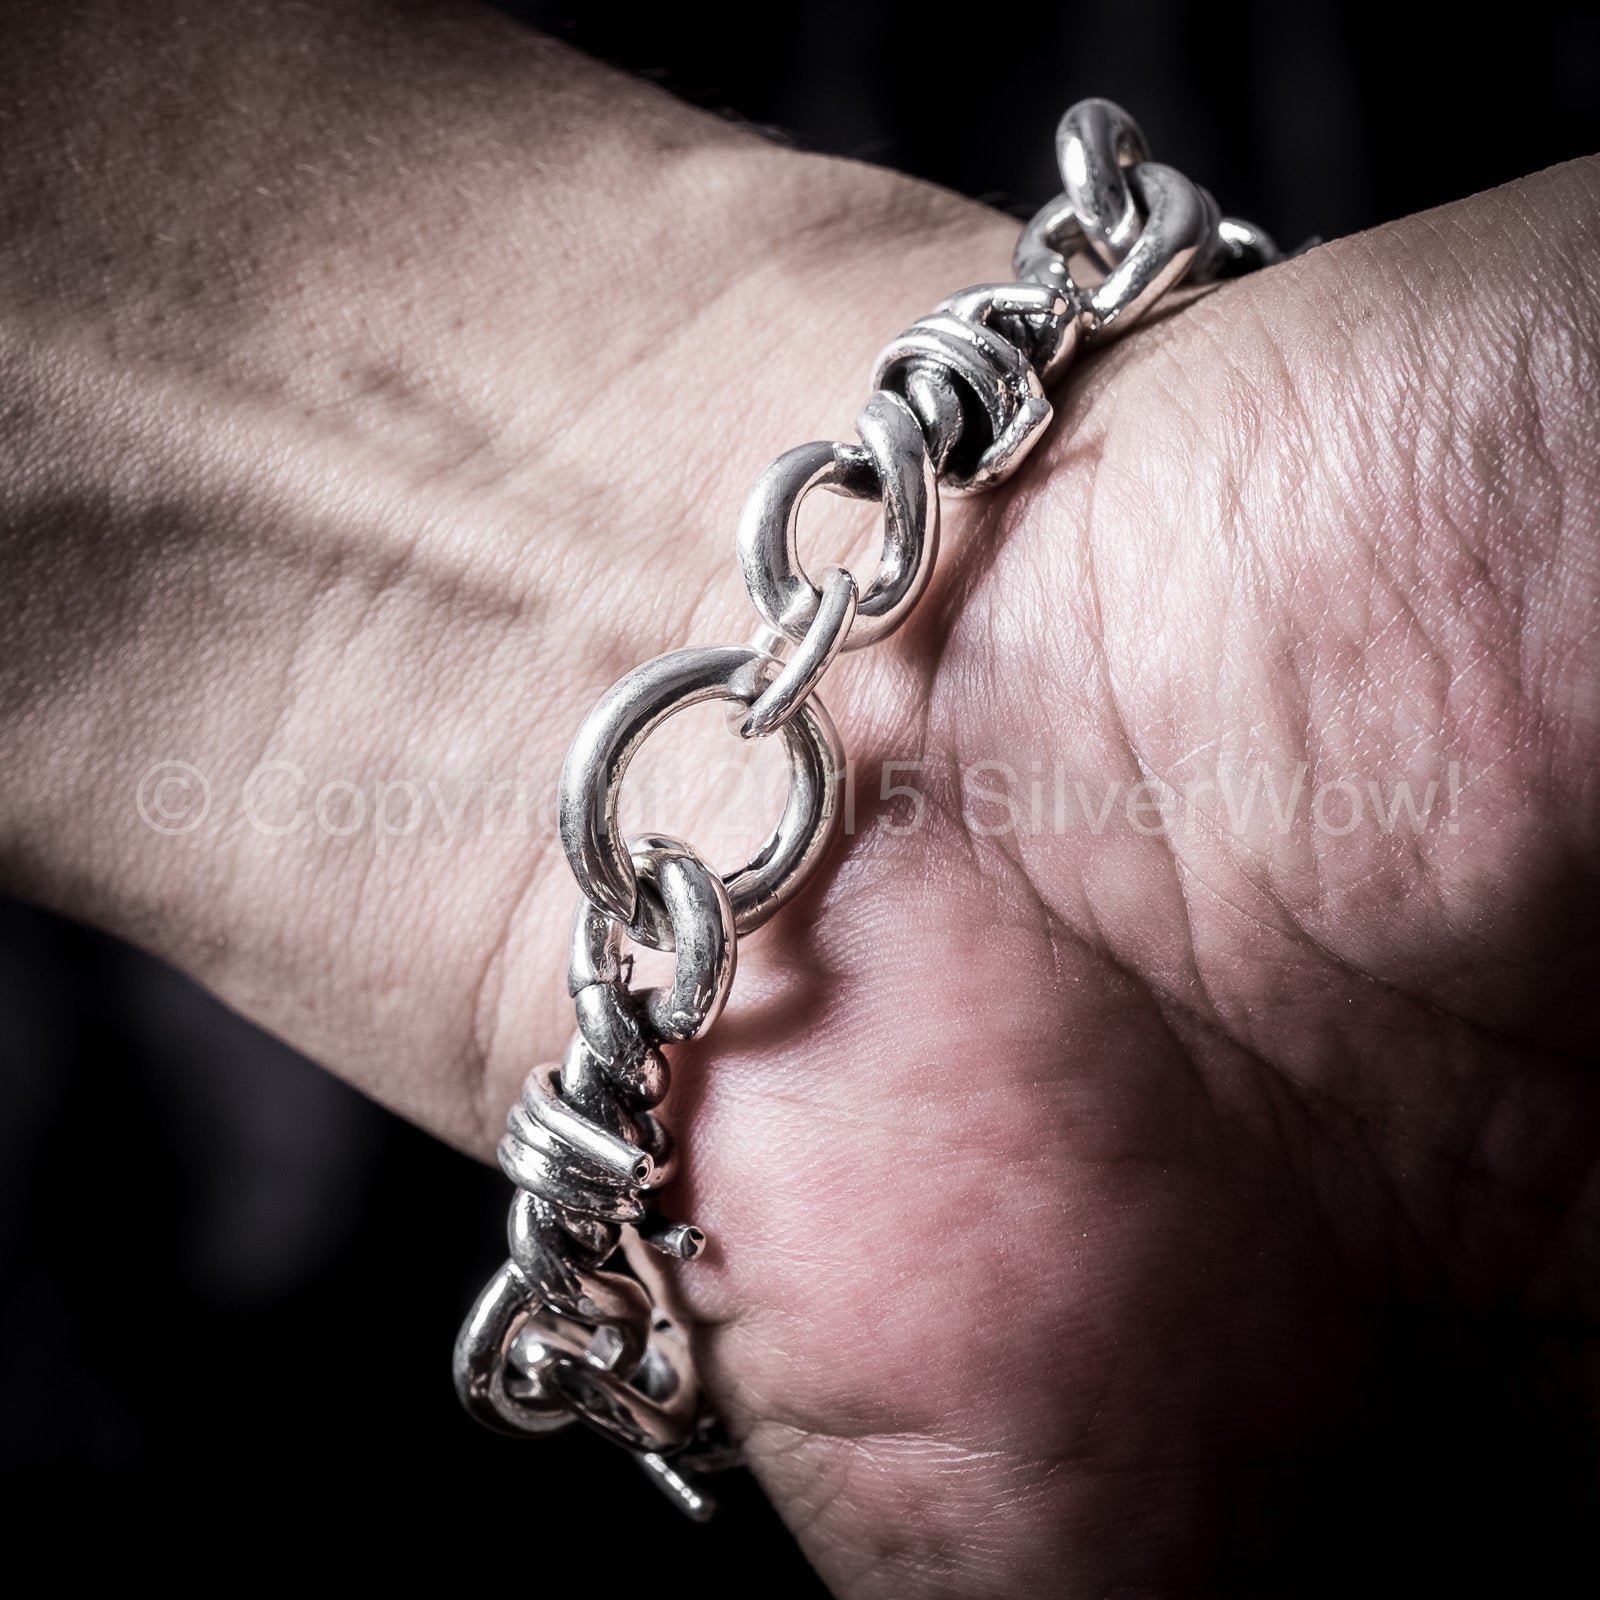 Cord and chain bracelet, Le 31, Men's Bracelets